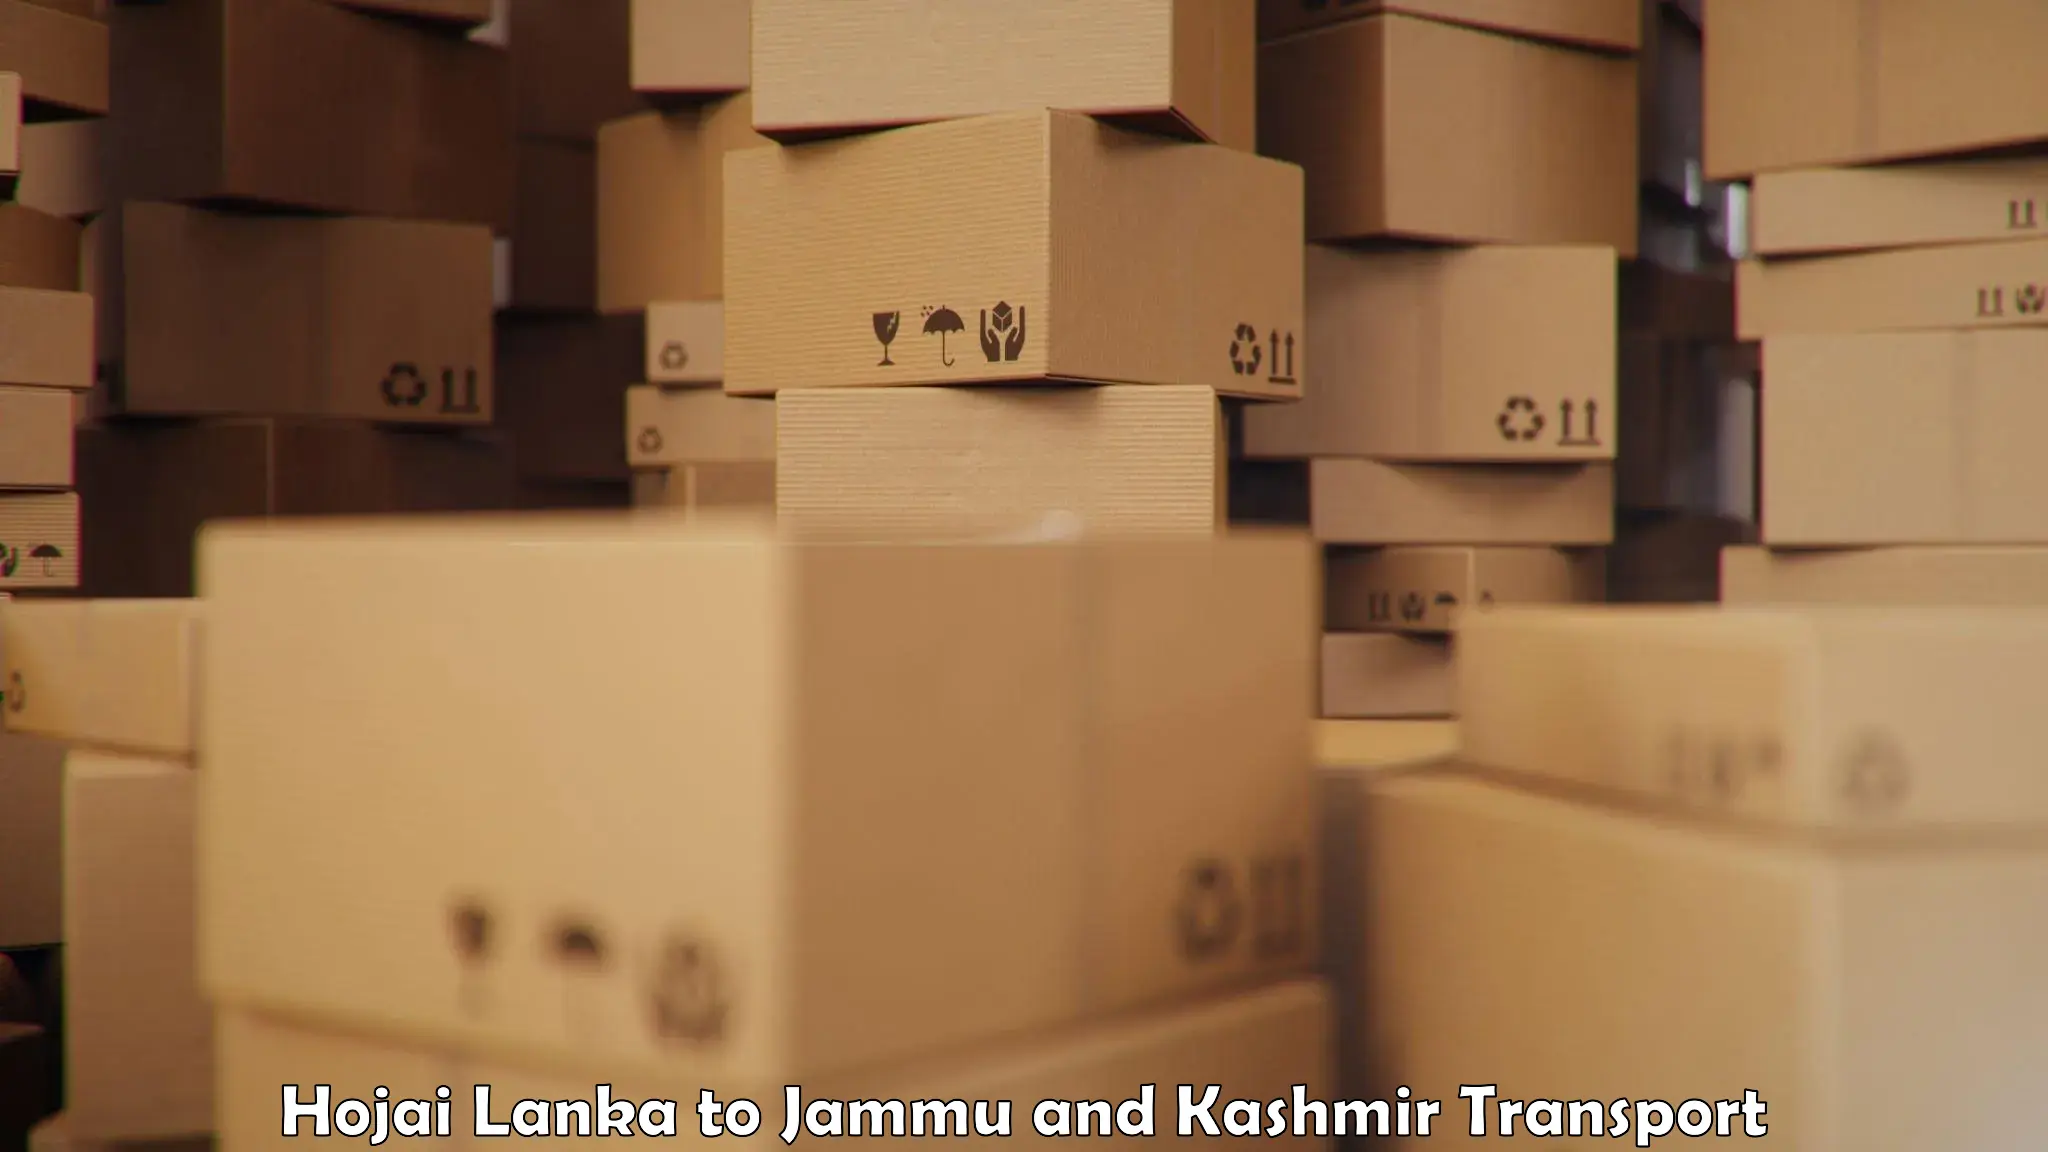 India truck logistics services Hojai Lanka to IIT Jammu